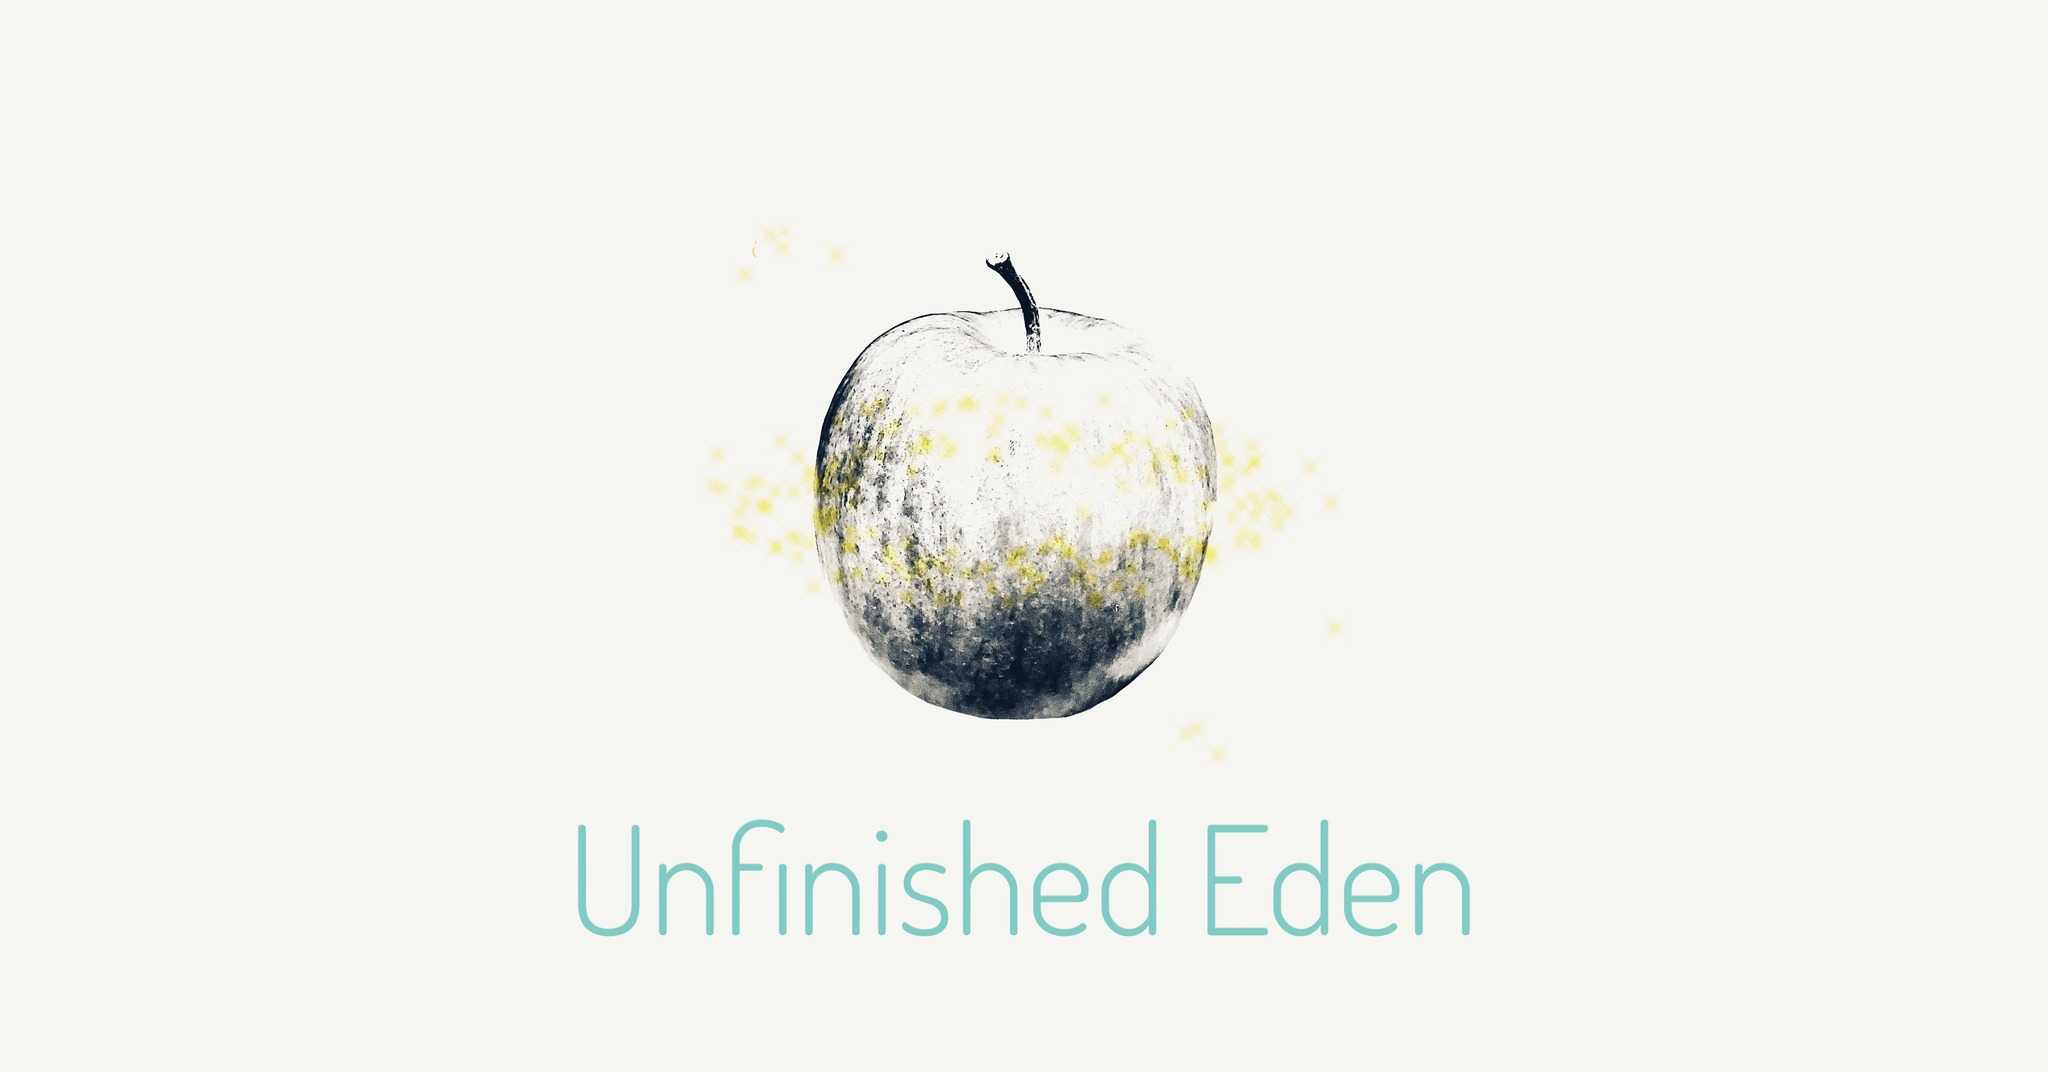 シーリングスタンプとセレクト雑貨「Unfinished Eden」